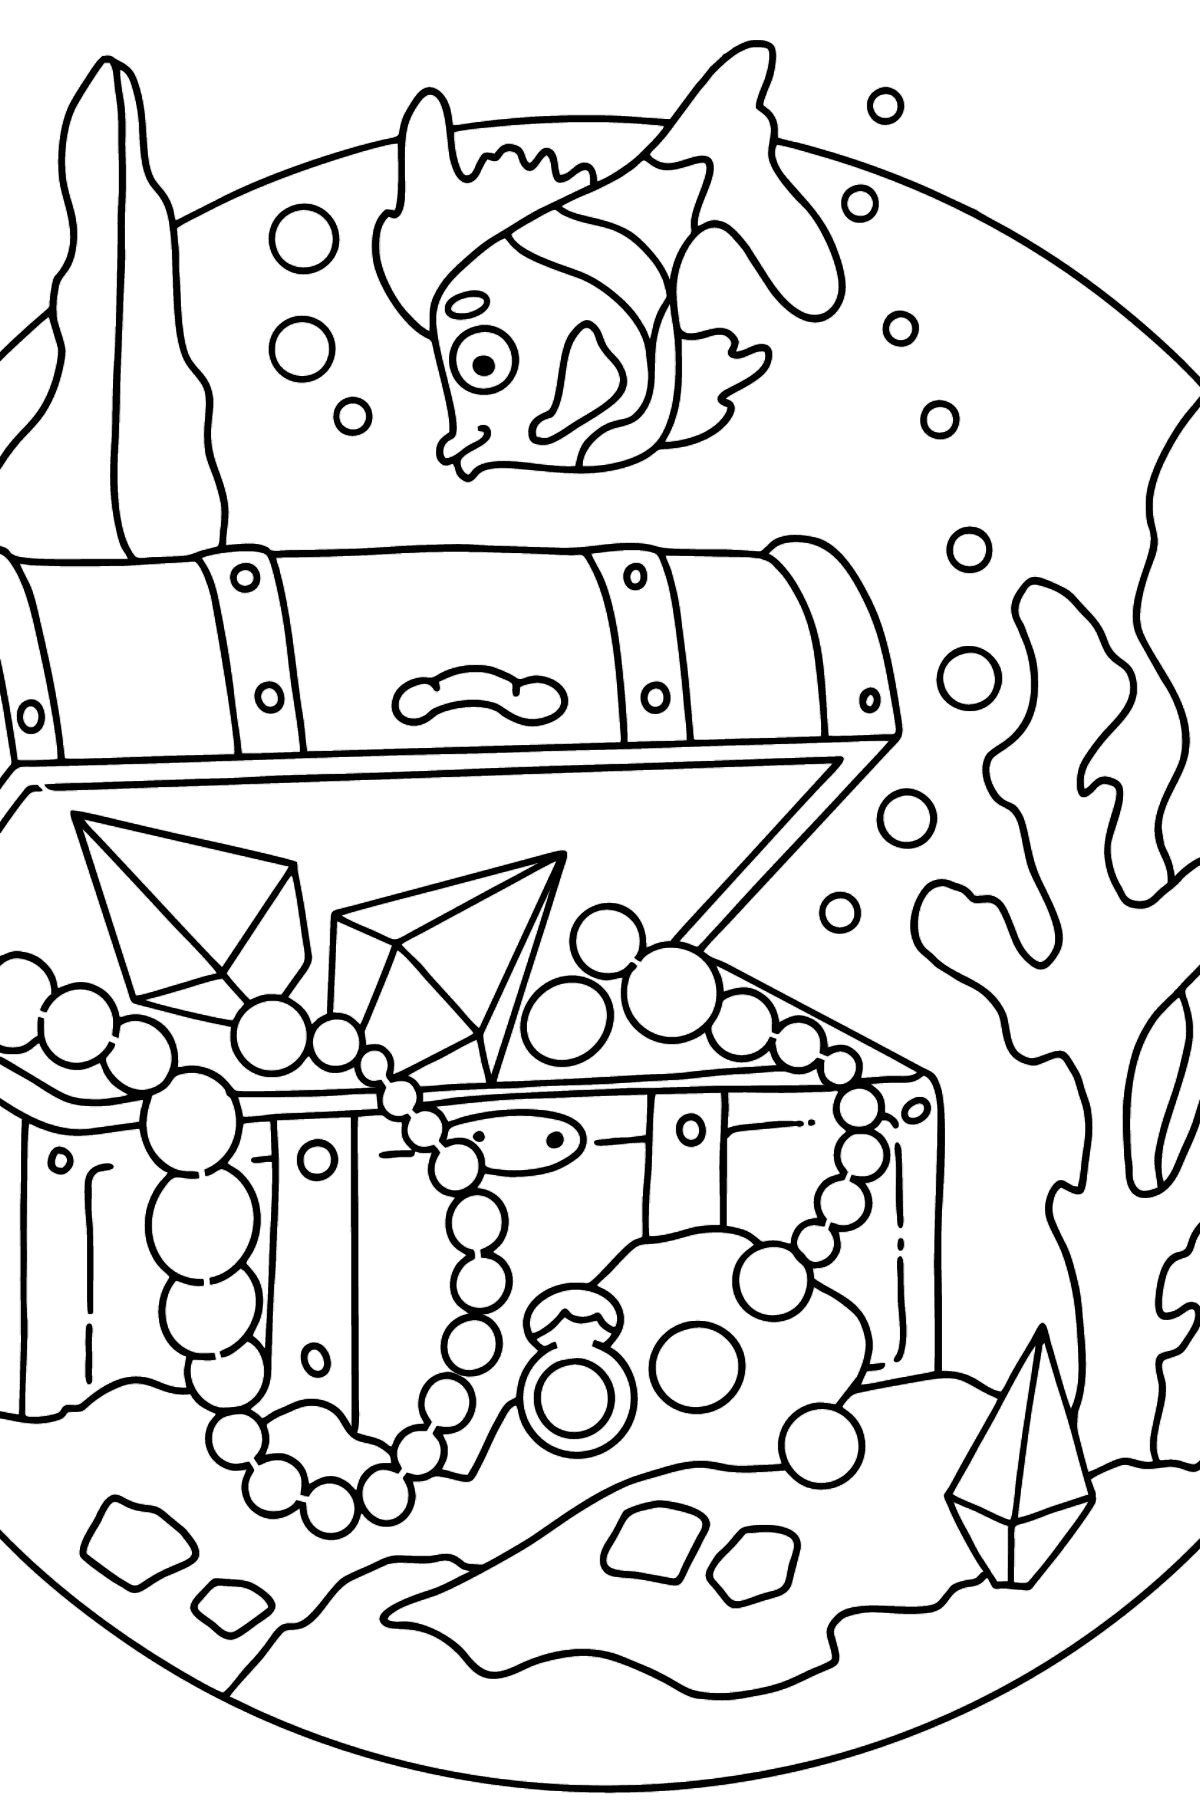 Desenho de peixe e tesouro para colorir (fácil) - Imagens para Colorir para Crianças